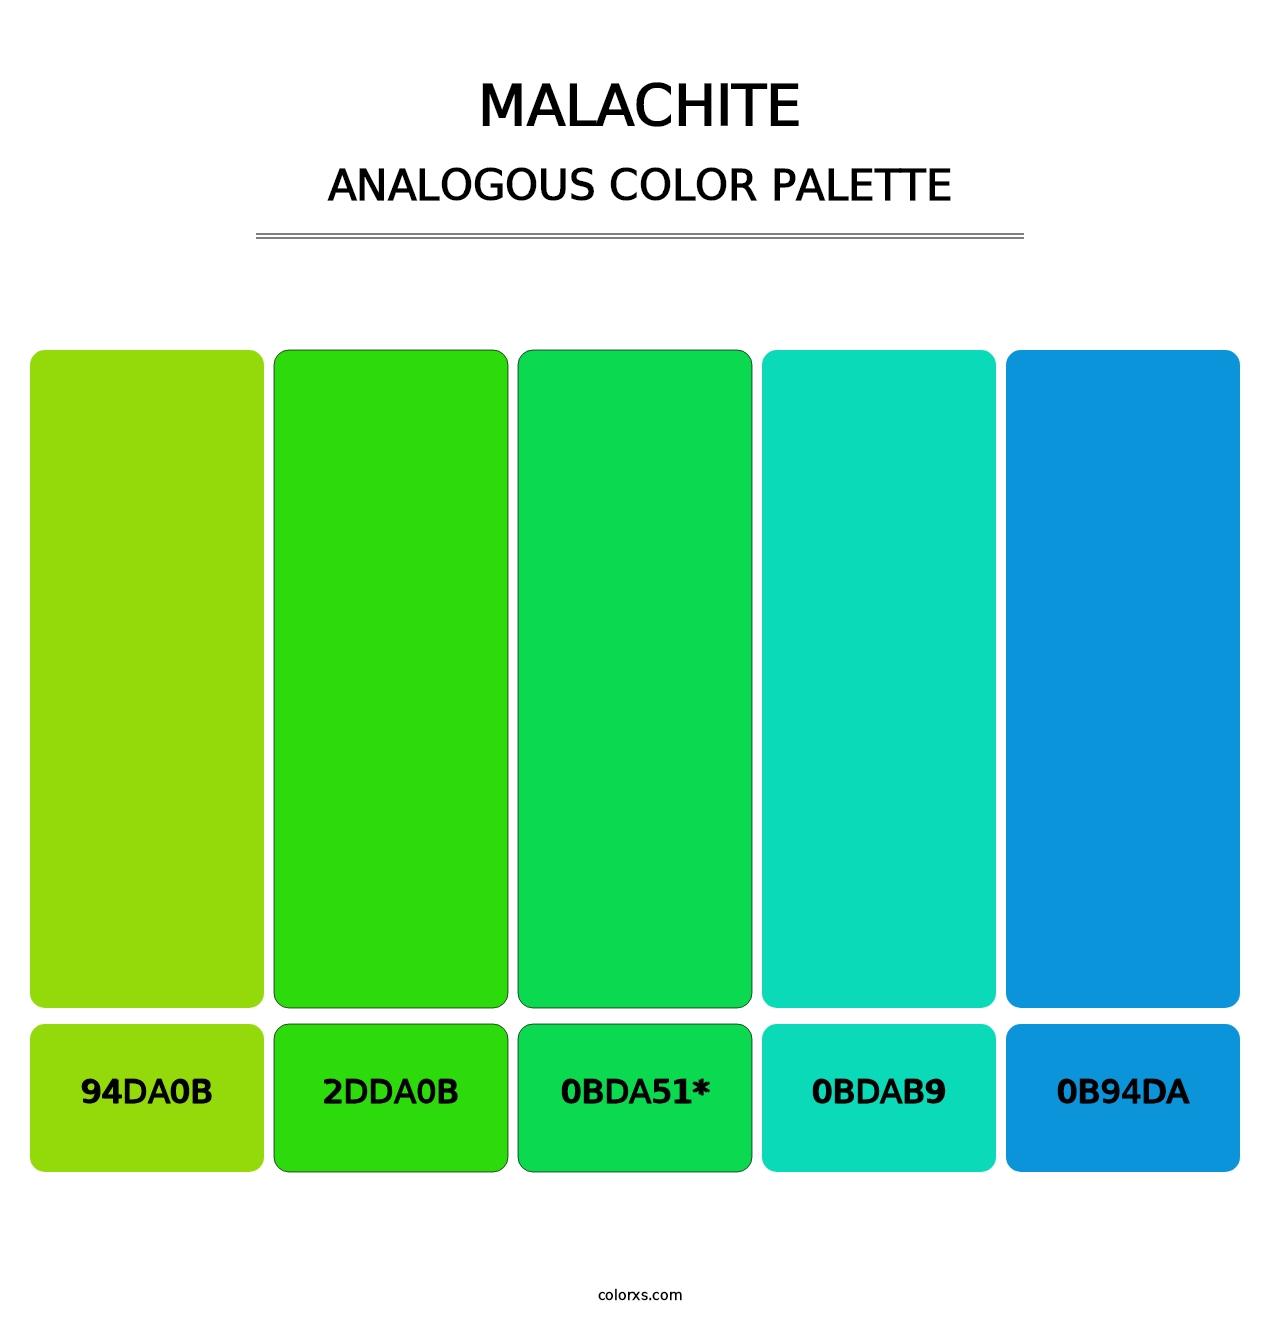 Malachite - Analogous Color Palette